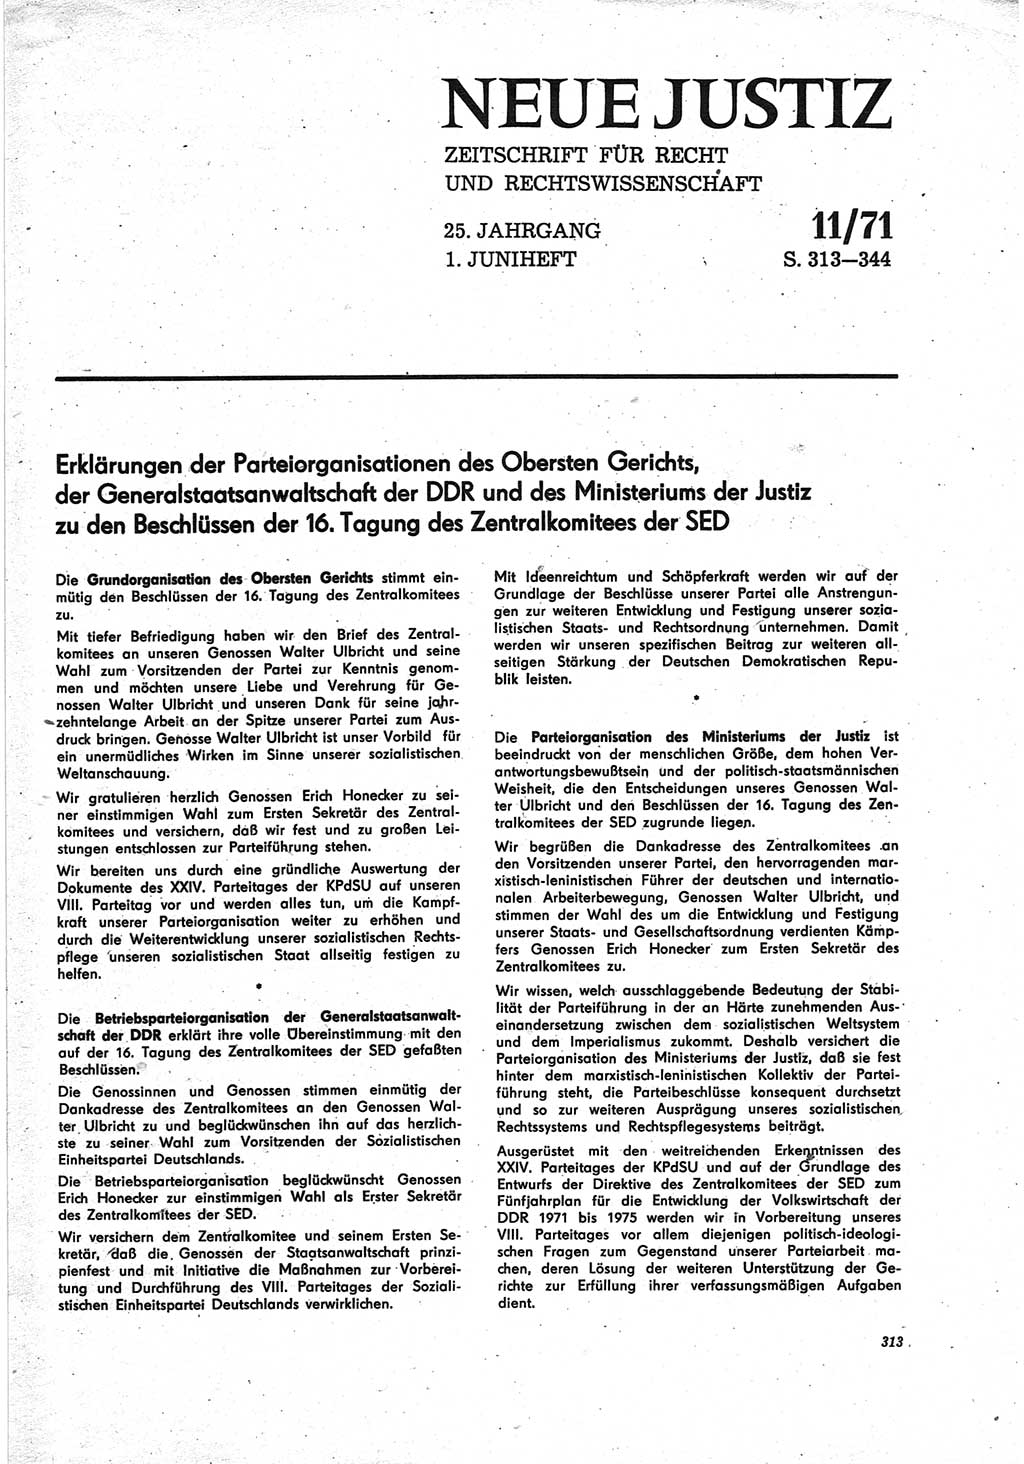 Neue Justiz (NJ), Zeitschrift für Recht und Rechtswissenschaft [Deutsche Demokratische Republik (DDR)], 25. Jahrgang 1971, Seite 313 (NJ DDR 1971, S. 313)